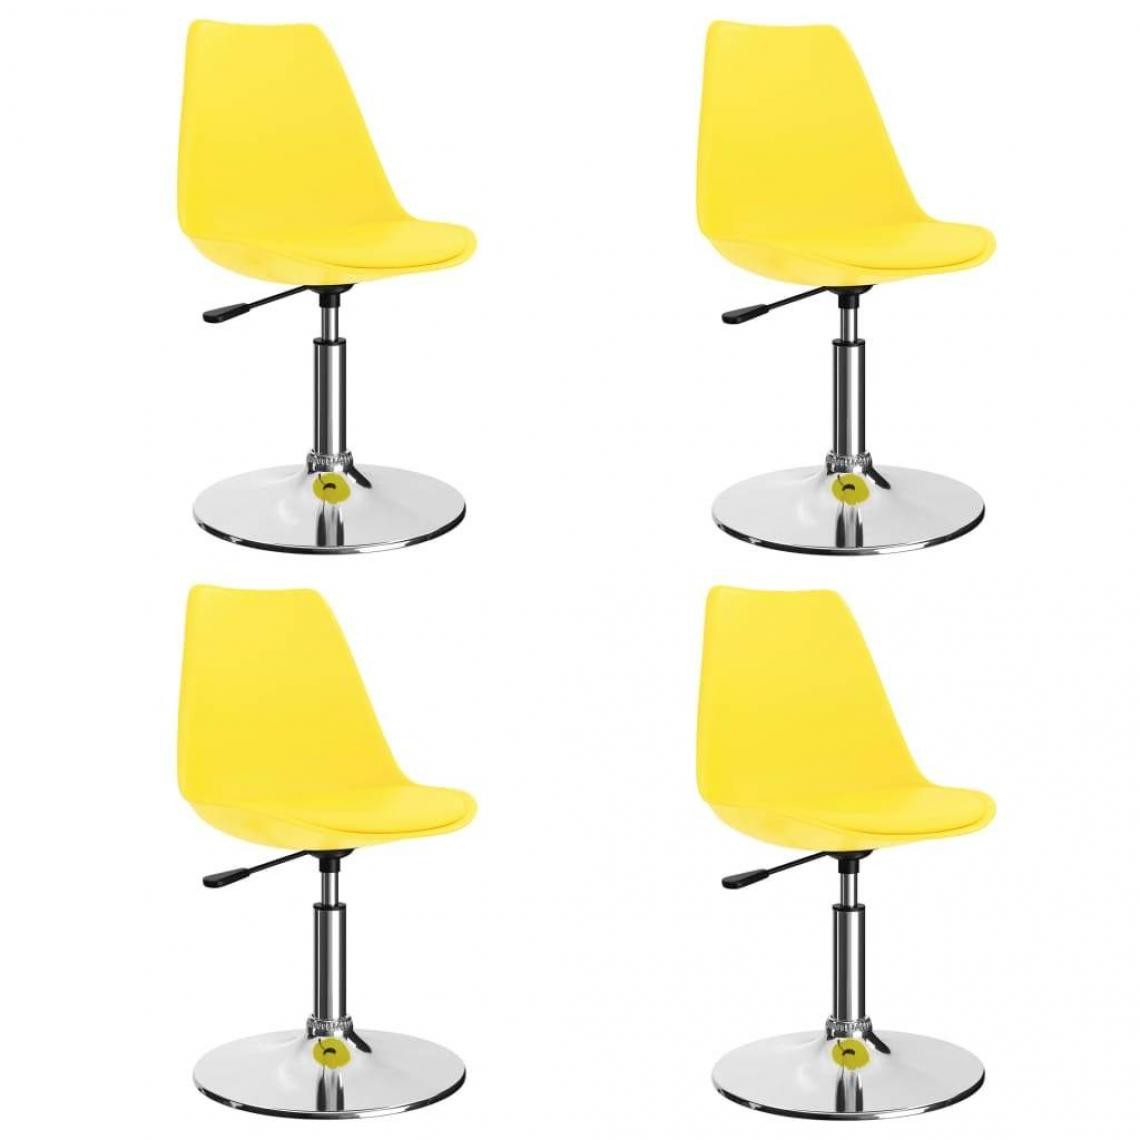 Decoshop26 - Lot de 4 chaises de salle à manger cuisine pivotantes design moderne similicuir jaune CDS021885 - Chaises